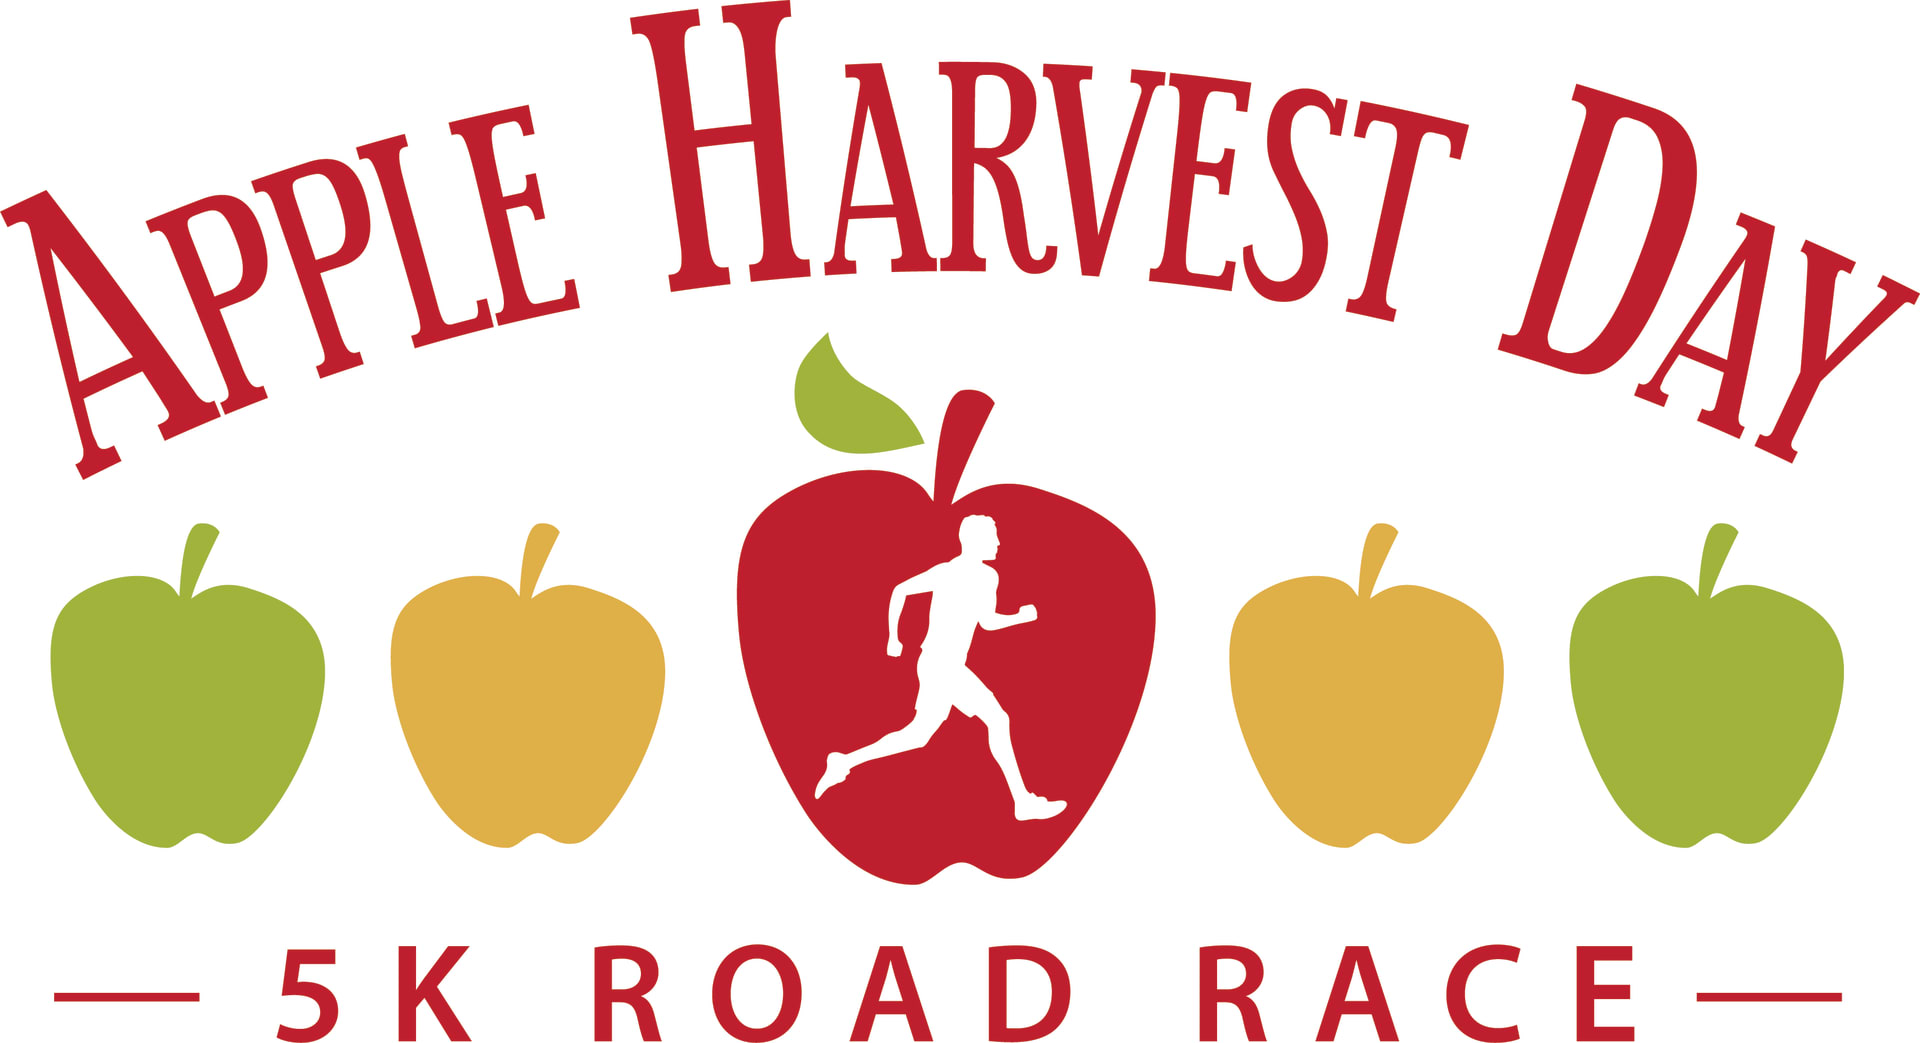 Apple Harvest Day 5K Road Race logo on RaceRaves